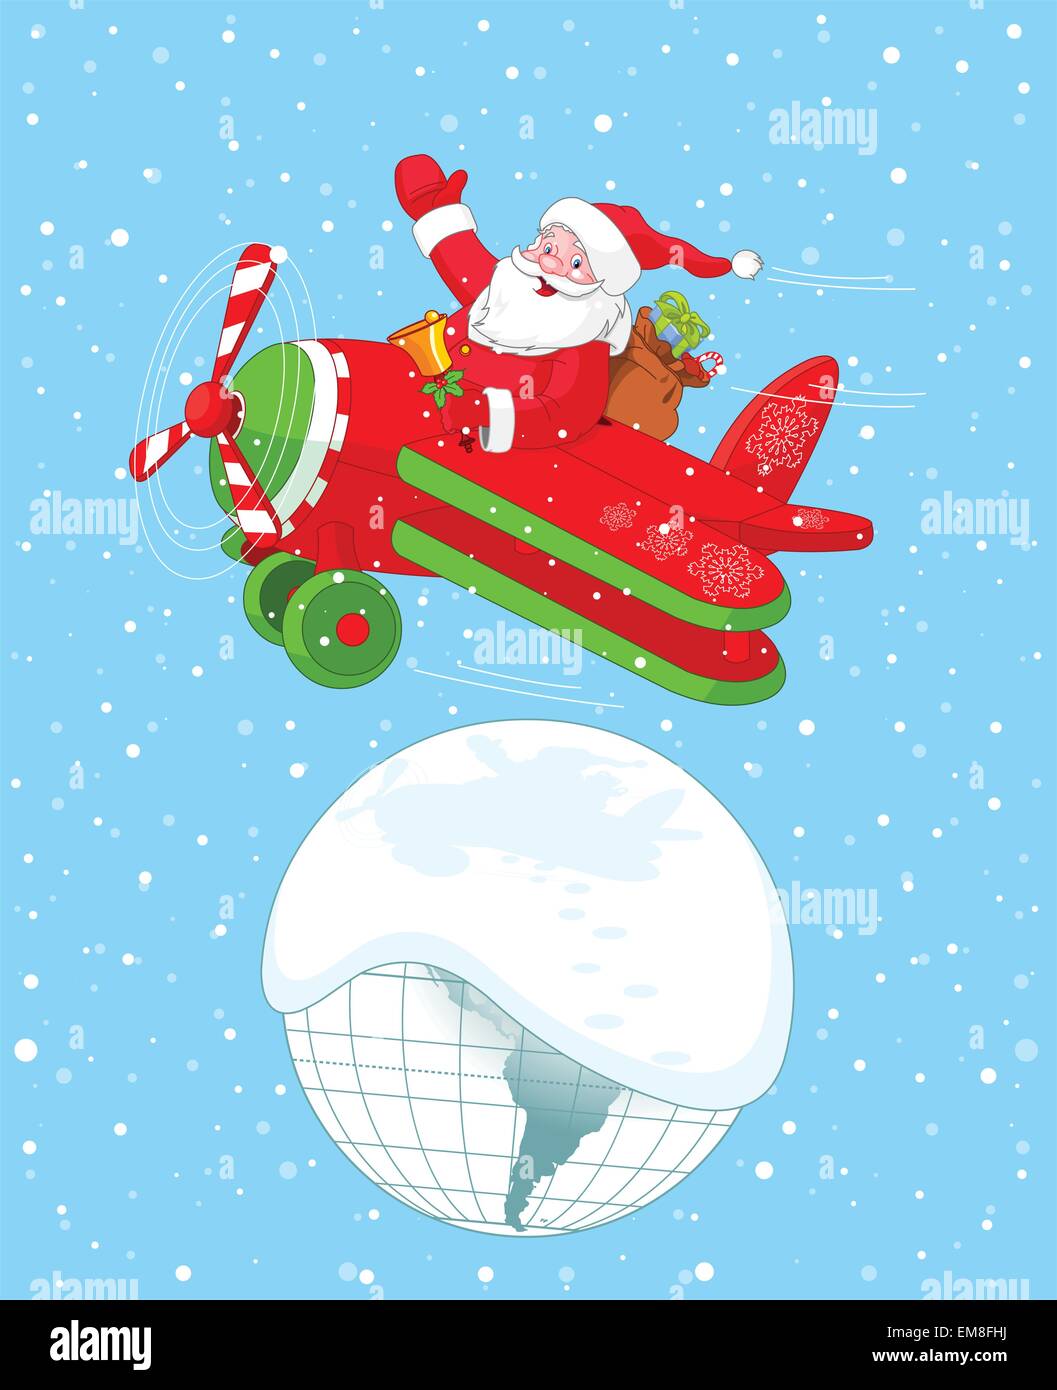 Santa Flying His Christmas Plane Stock Image